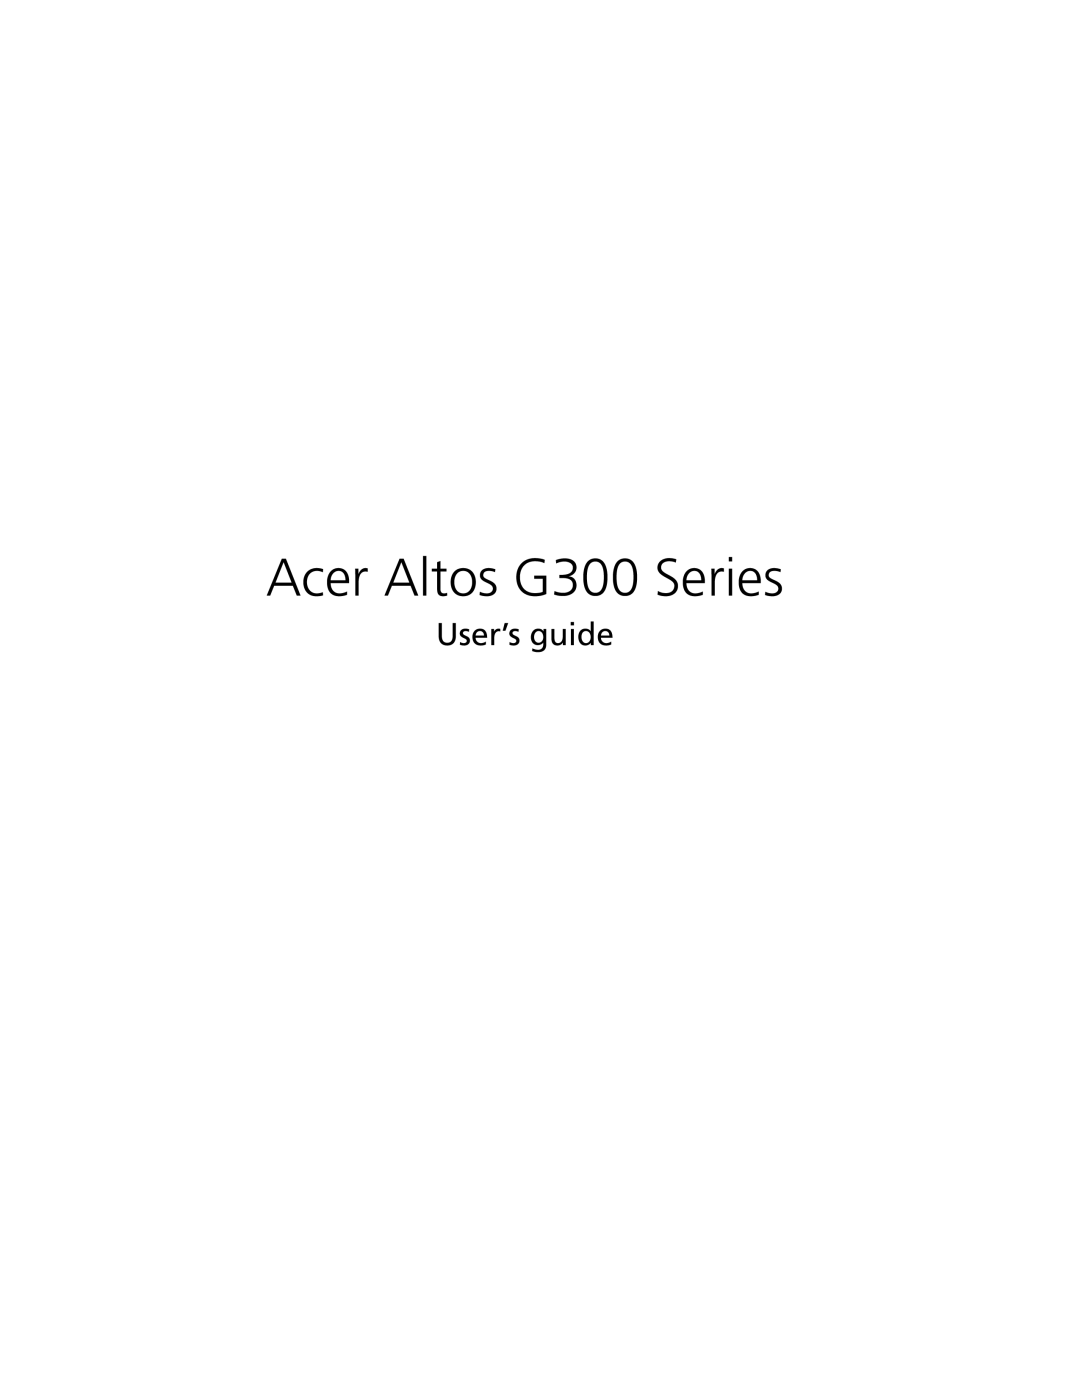 Acer G301 manual User’s guide, Acer Altos G300 Series 